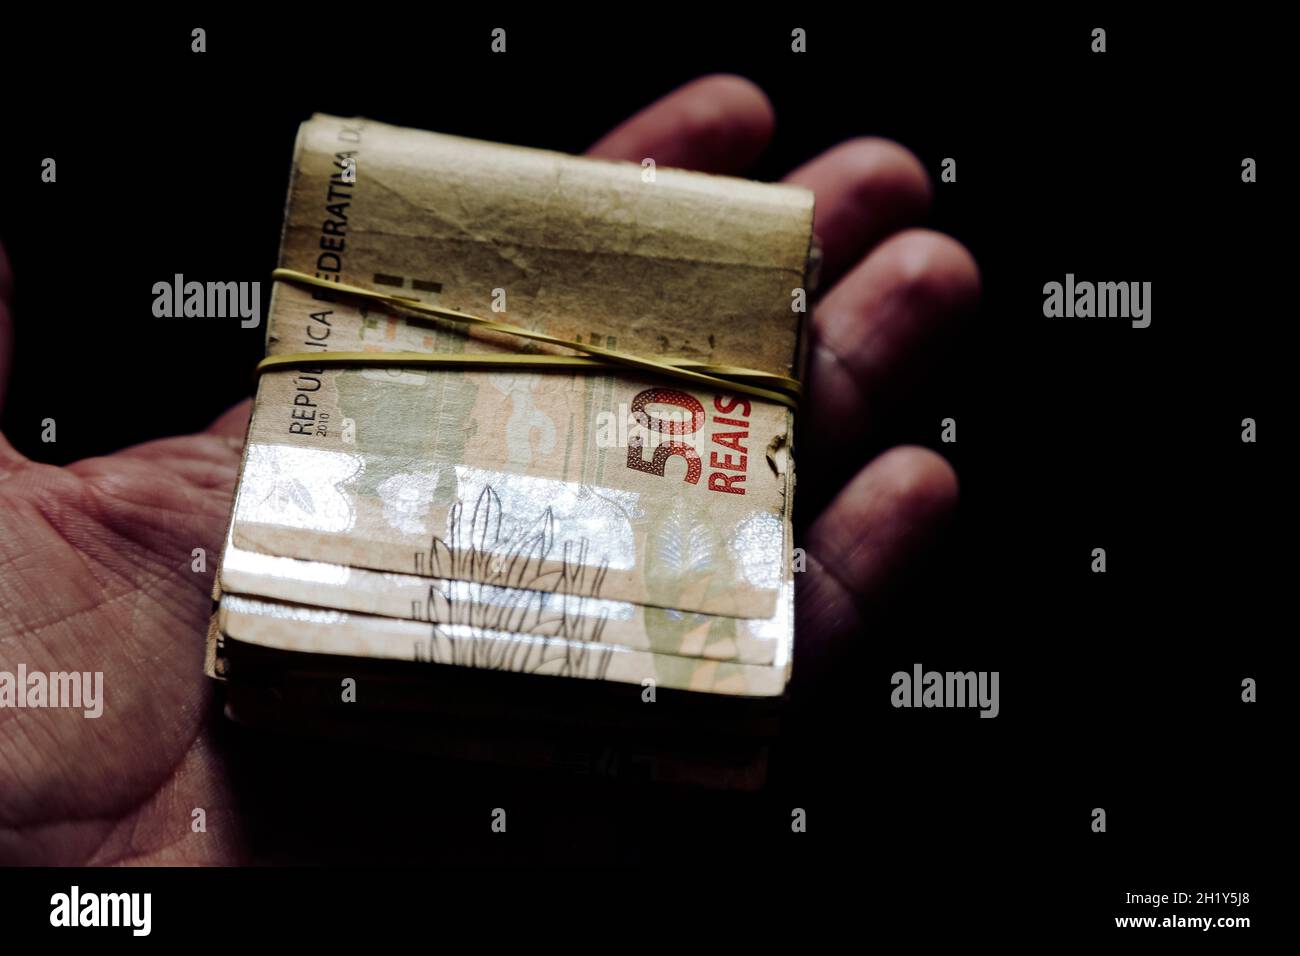 Brasilien Geld gestapelt und gruppiert - mehrere brasilianische reale Banknoten in der Hand Stockfoto